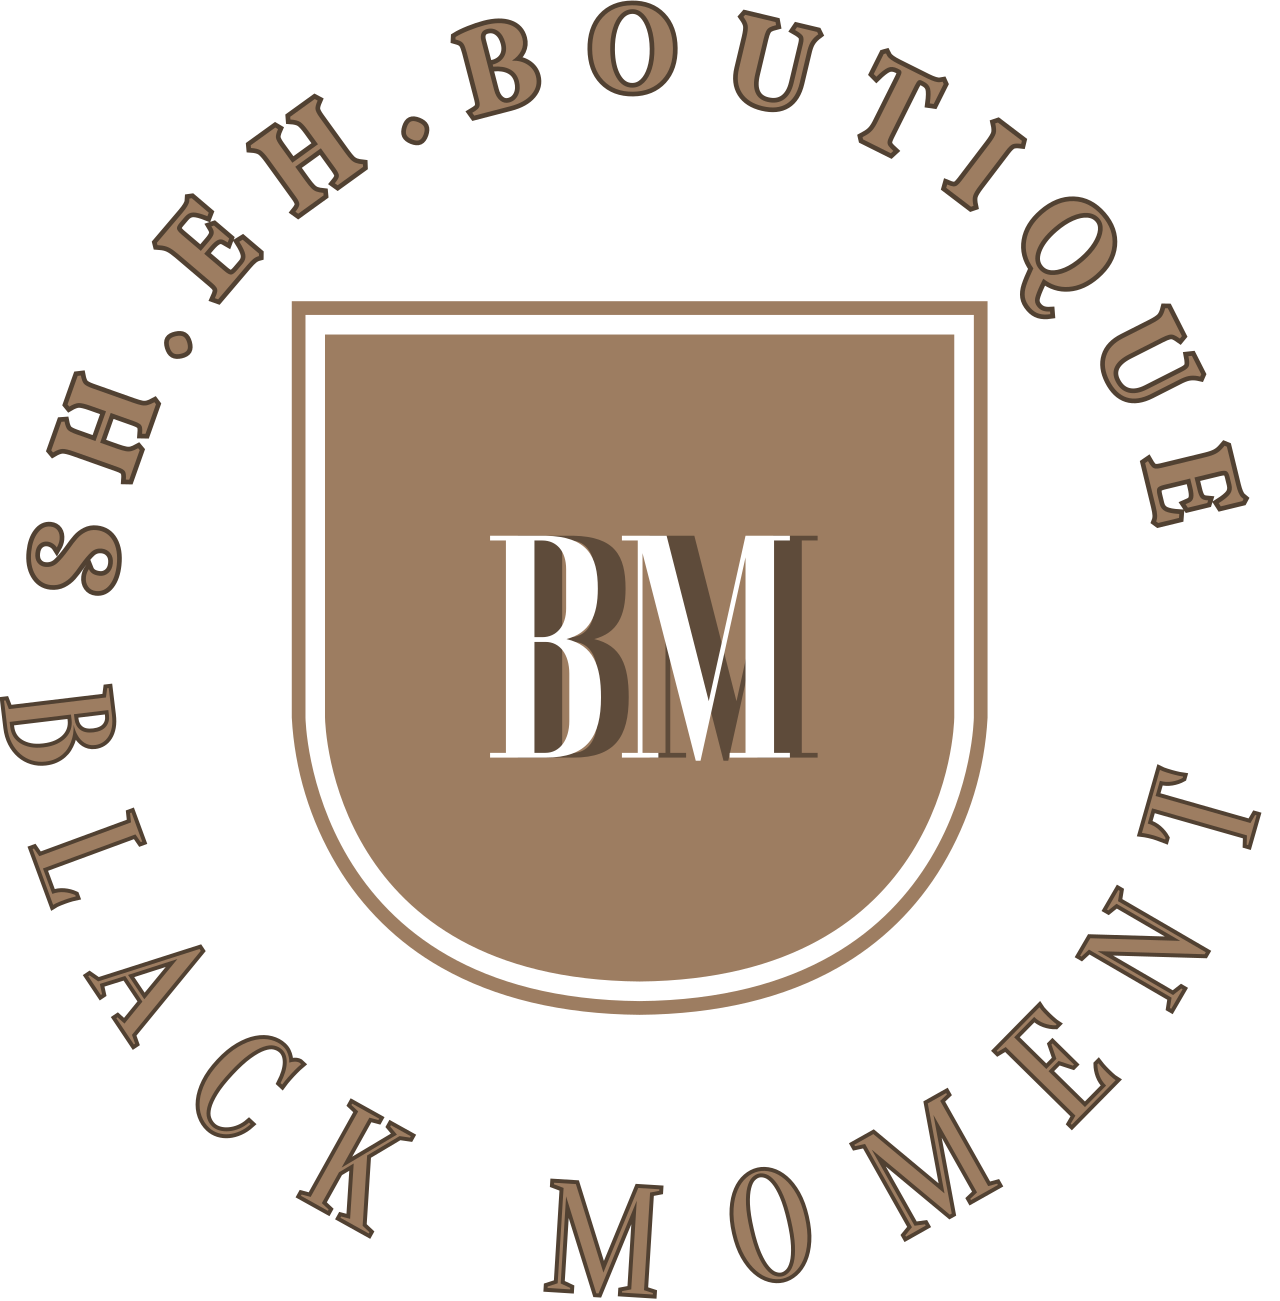 BLACK MOMENT 's logo